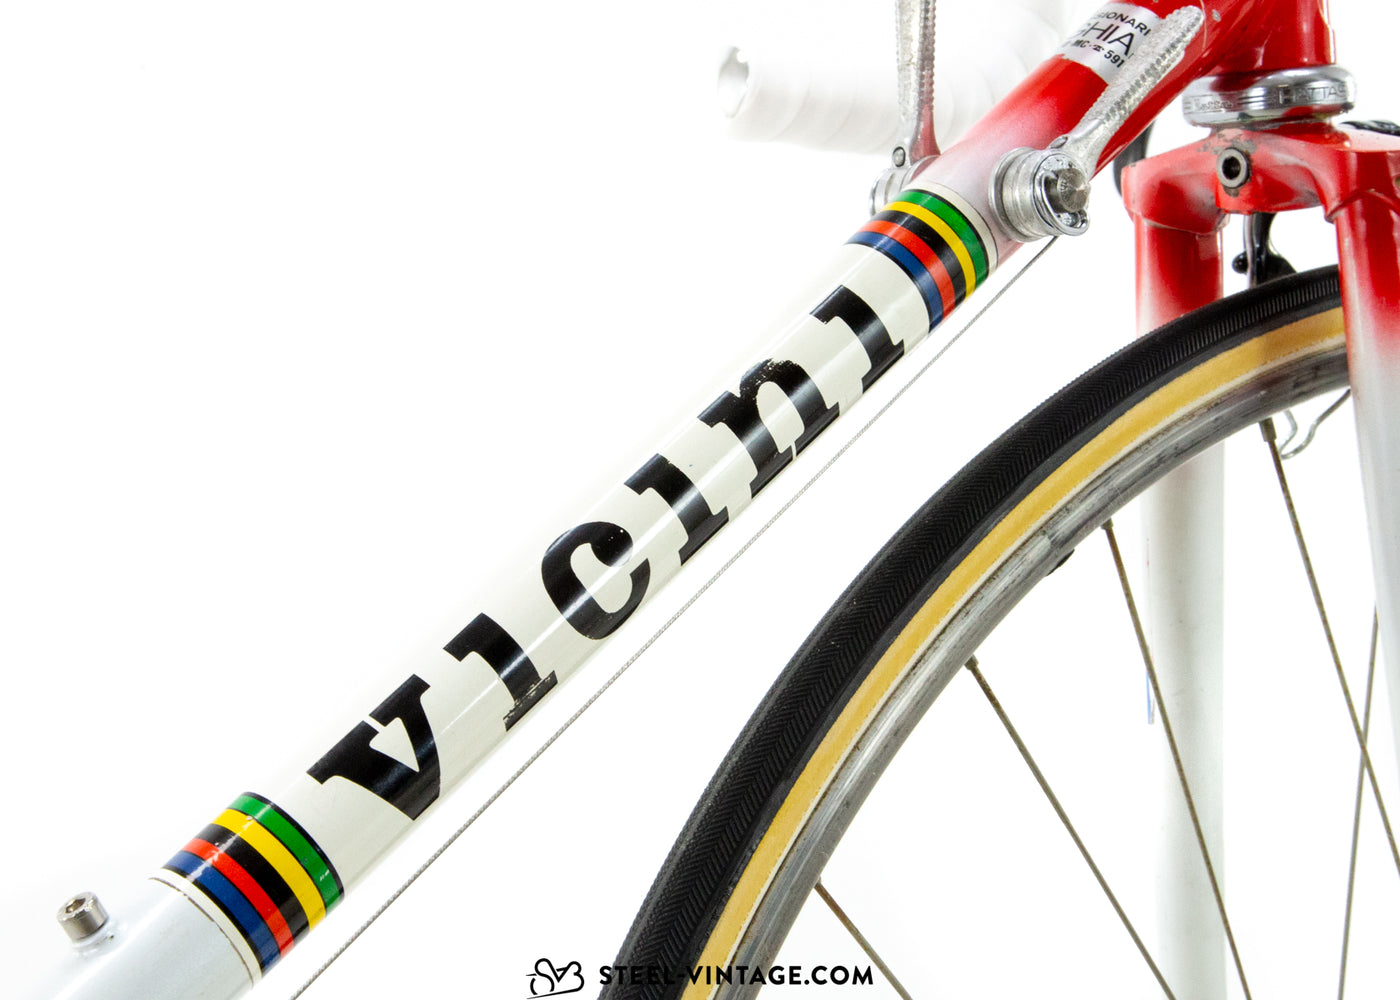 Vicini Veloce Vélo de route 1980